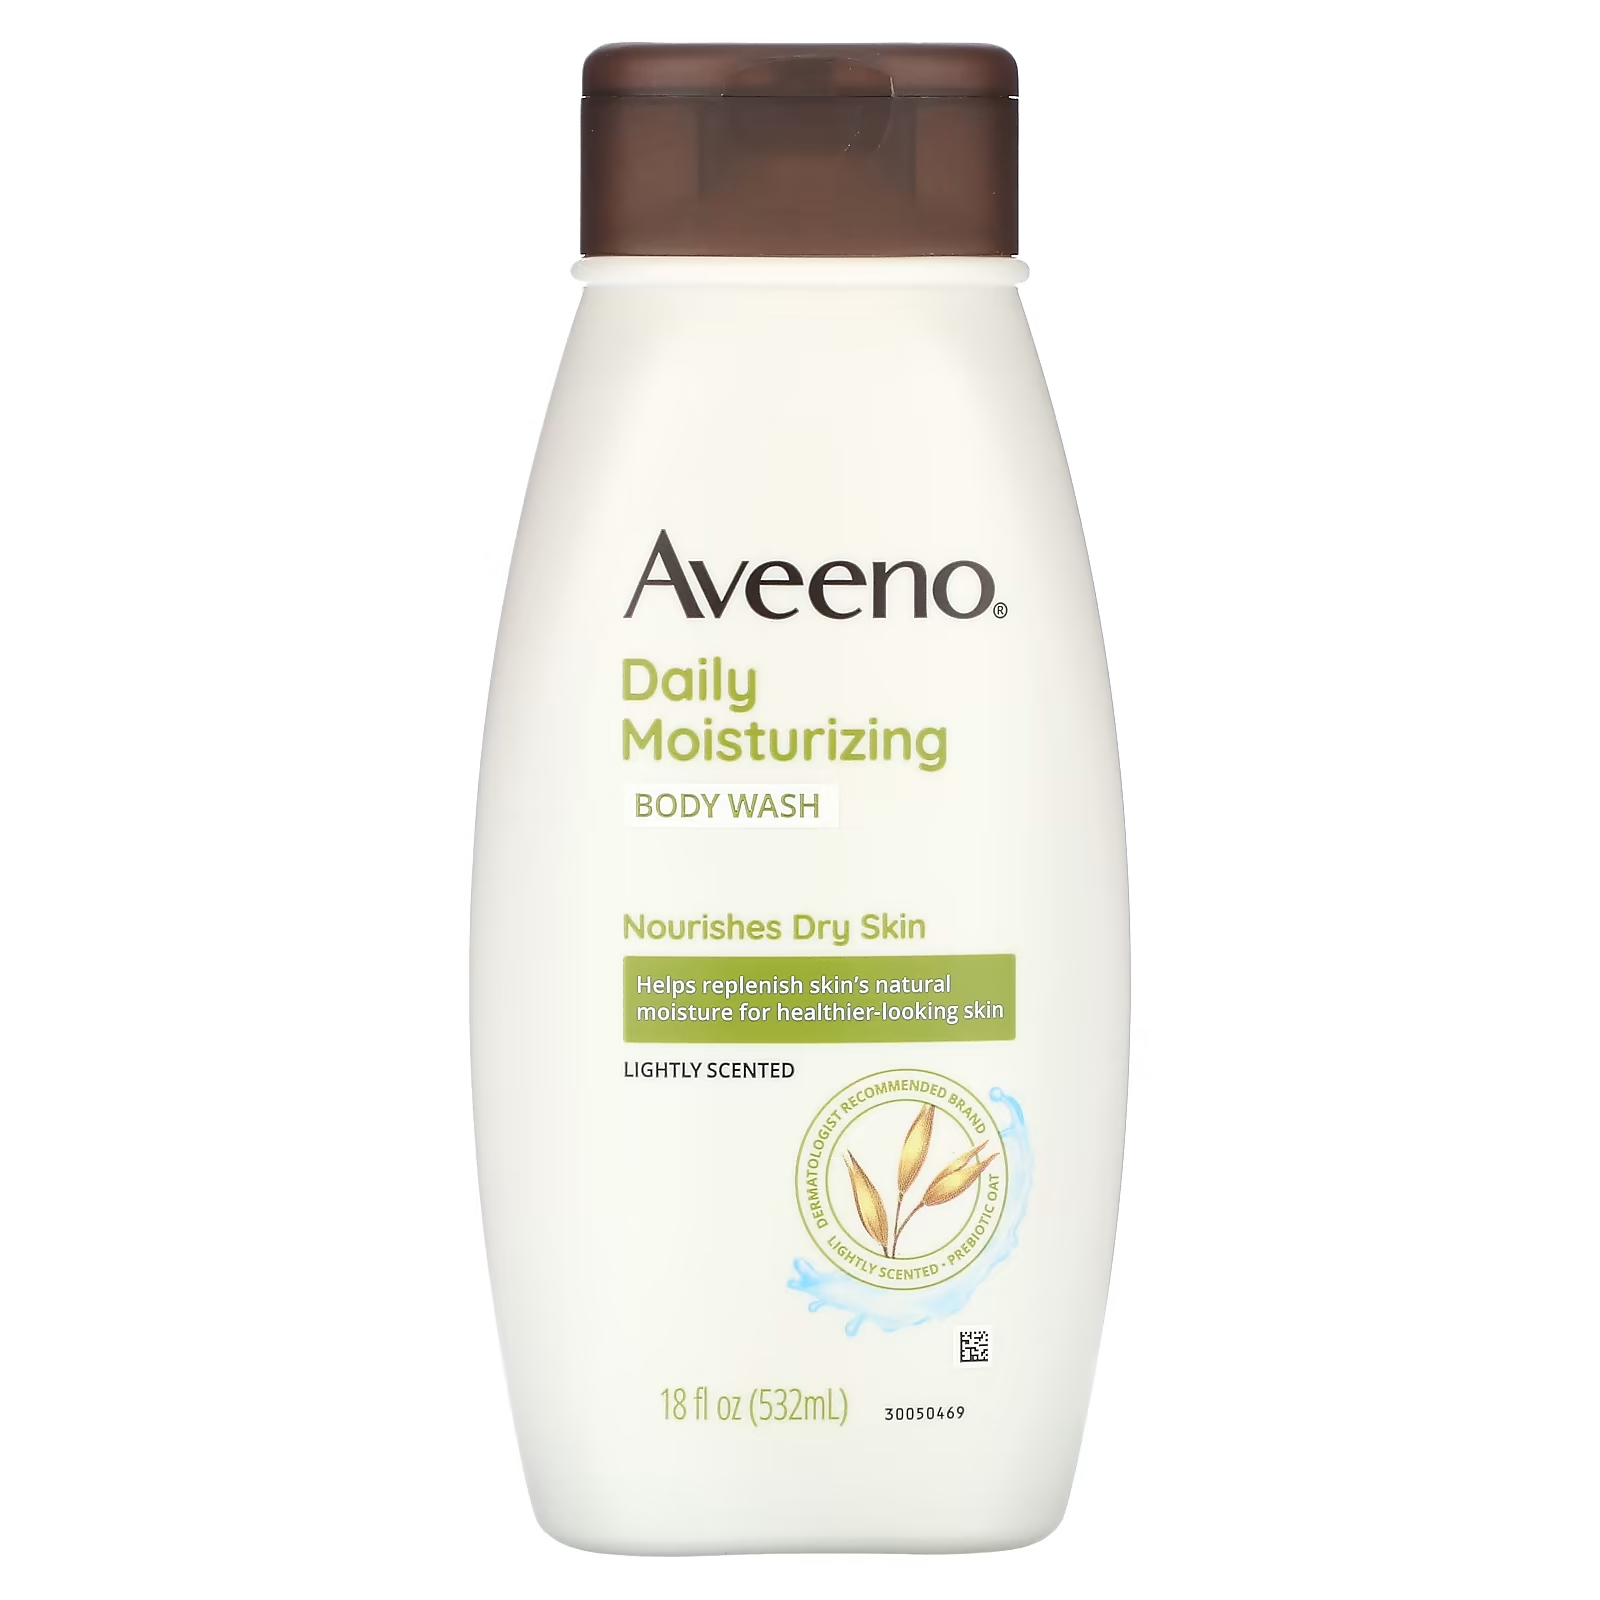 Aveeno Daily Увлажняющий гель для душа с легким ароматом, 18 жидких унций (532 мл) aveeno детское увлажняющее средство для мытья тела и шампунь с легким запахом 532 мл 18 жидк унций